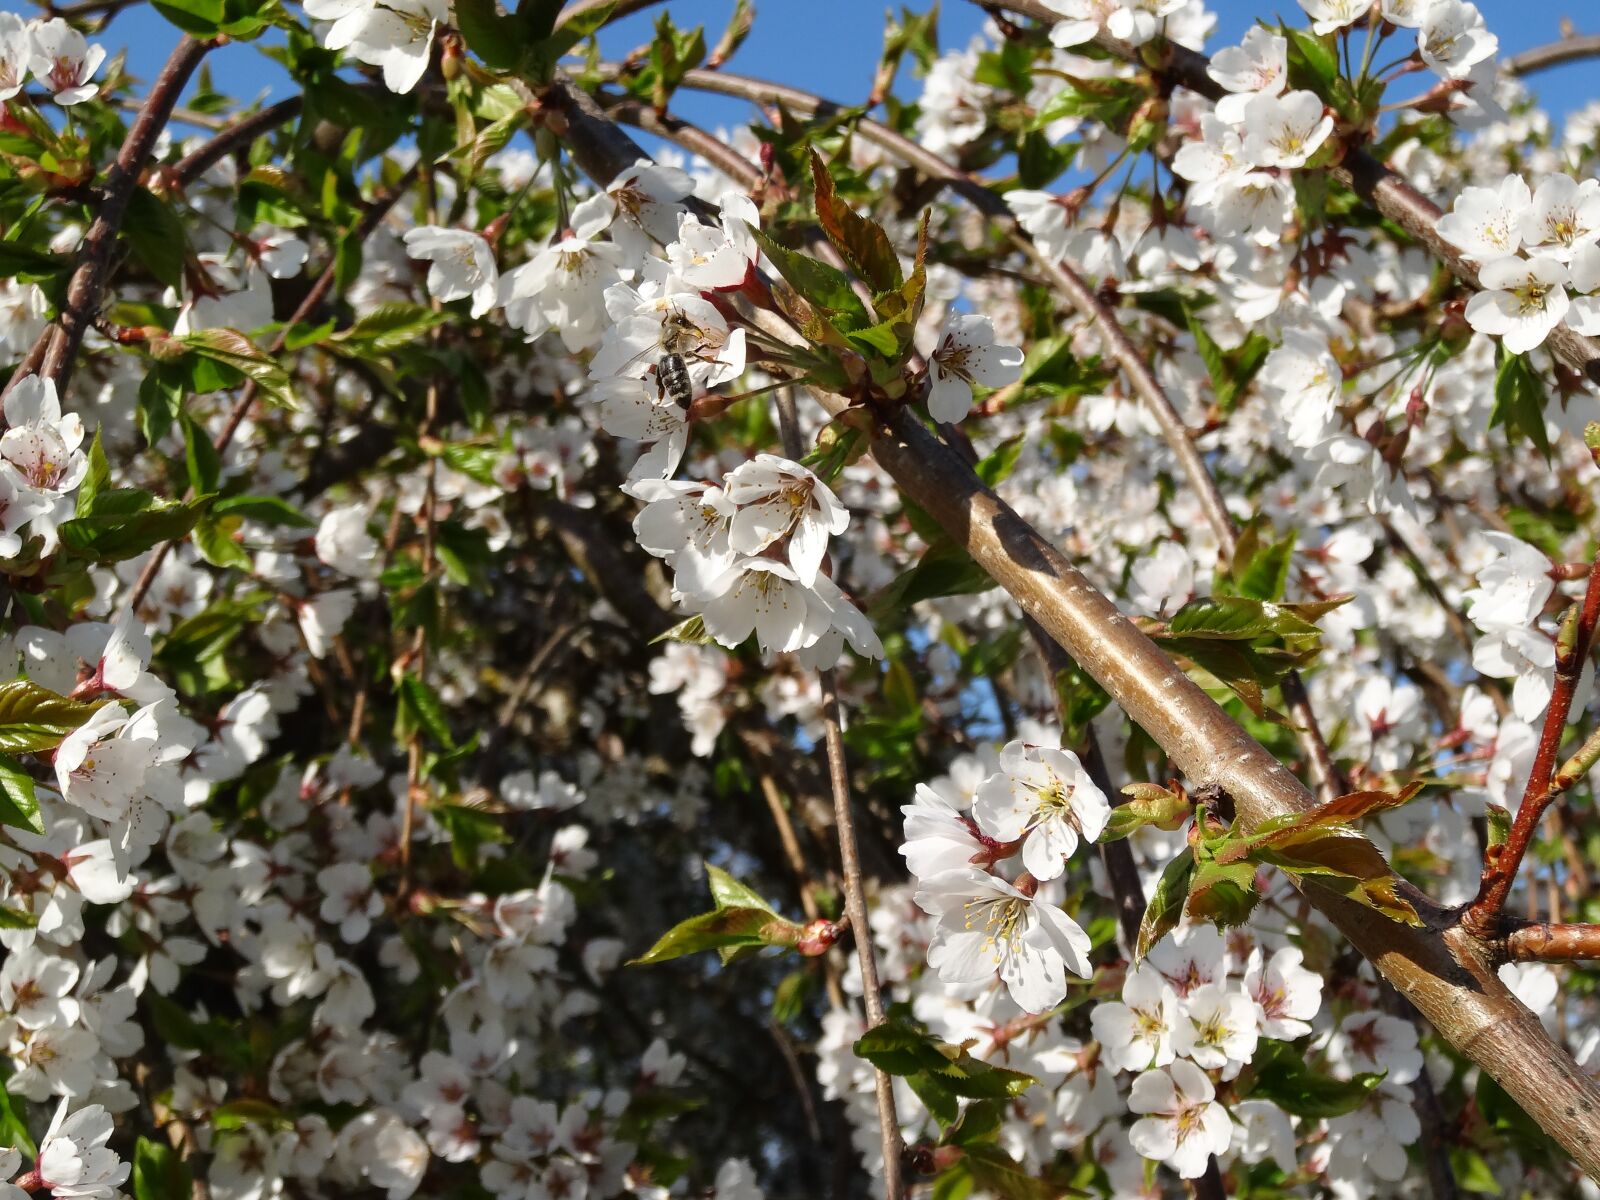 Sony Cyber-shot DSC-HX20V sample photo. Cherry blossom, spring, cherry photography